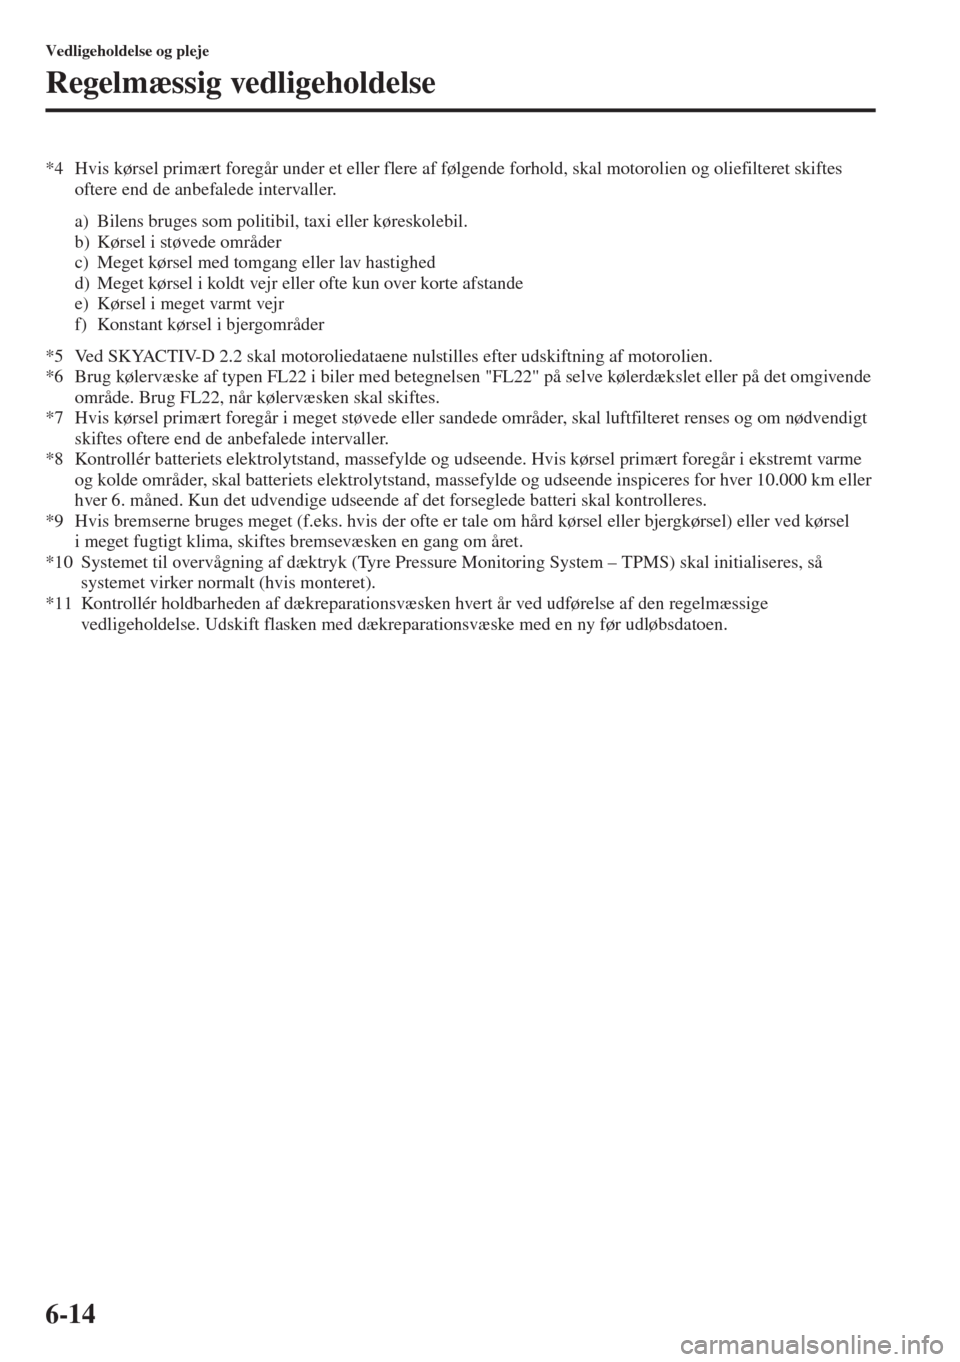 MAZDA MODEL 3 HATCHBACK 2015  Instruktionsbog (in Danish) 6-14
Vedligeholdelse og pleje
Regelmæssig vedligeholdelse
*4 Hvis kørsel primært foregår under et eller flere af følgende forhold, skal motorolien og oliefilteret skiftes 
oftere end de anbefaled